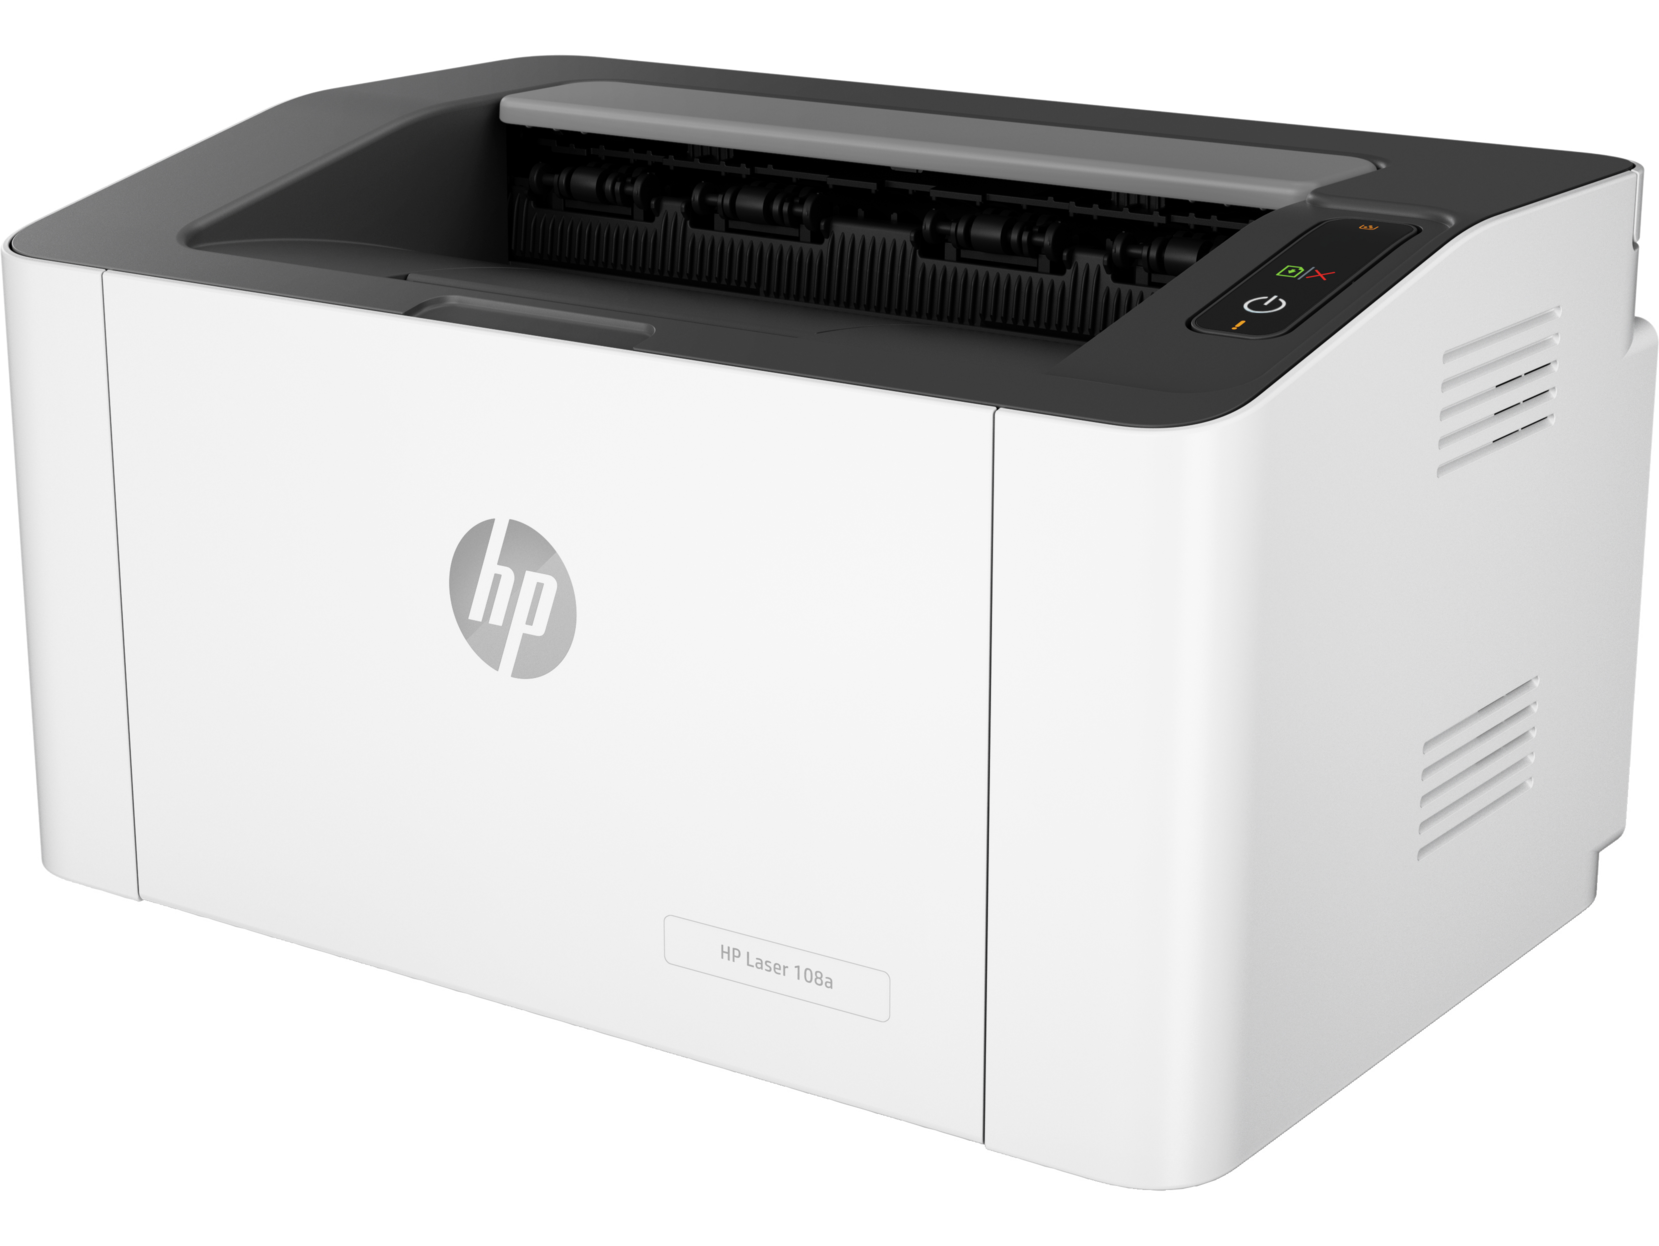 HP Laser 108a Printer / print quality 1,200 x 1,200 dpi